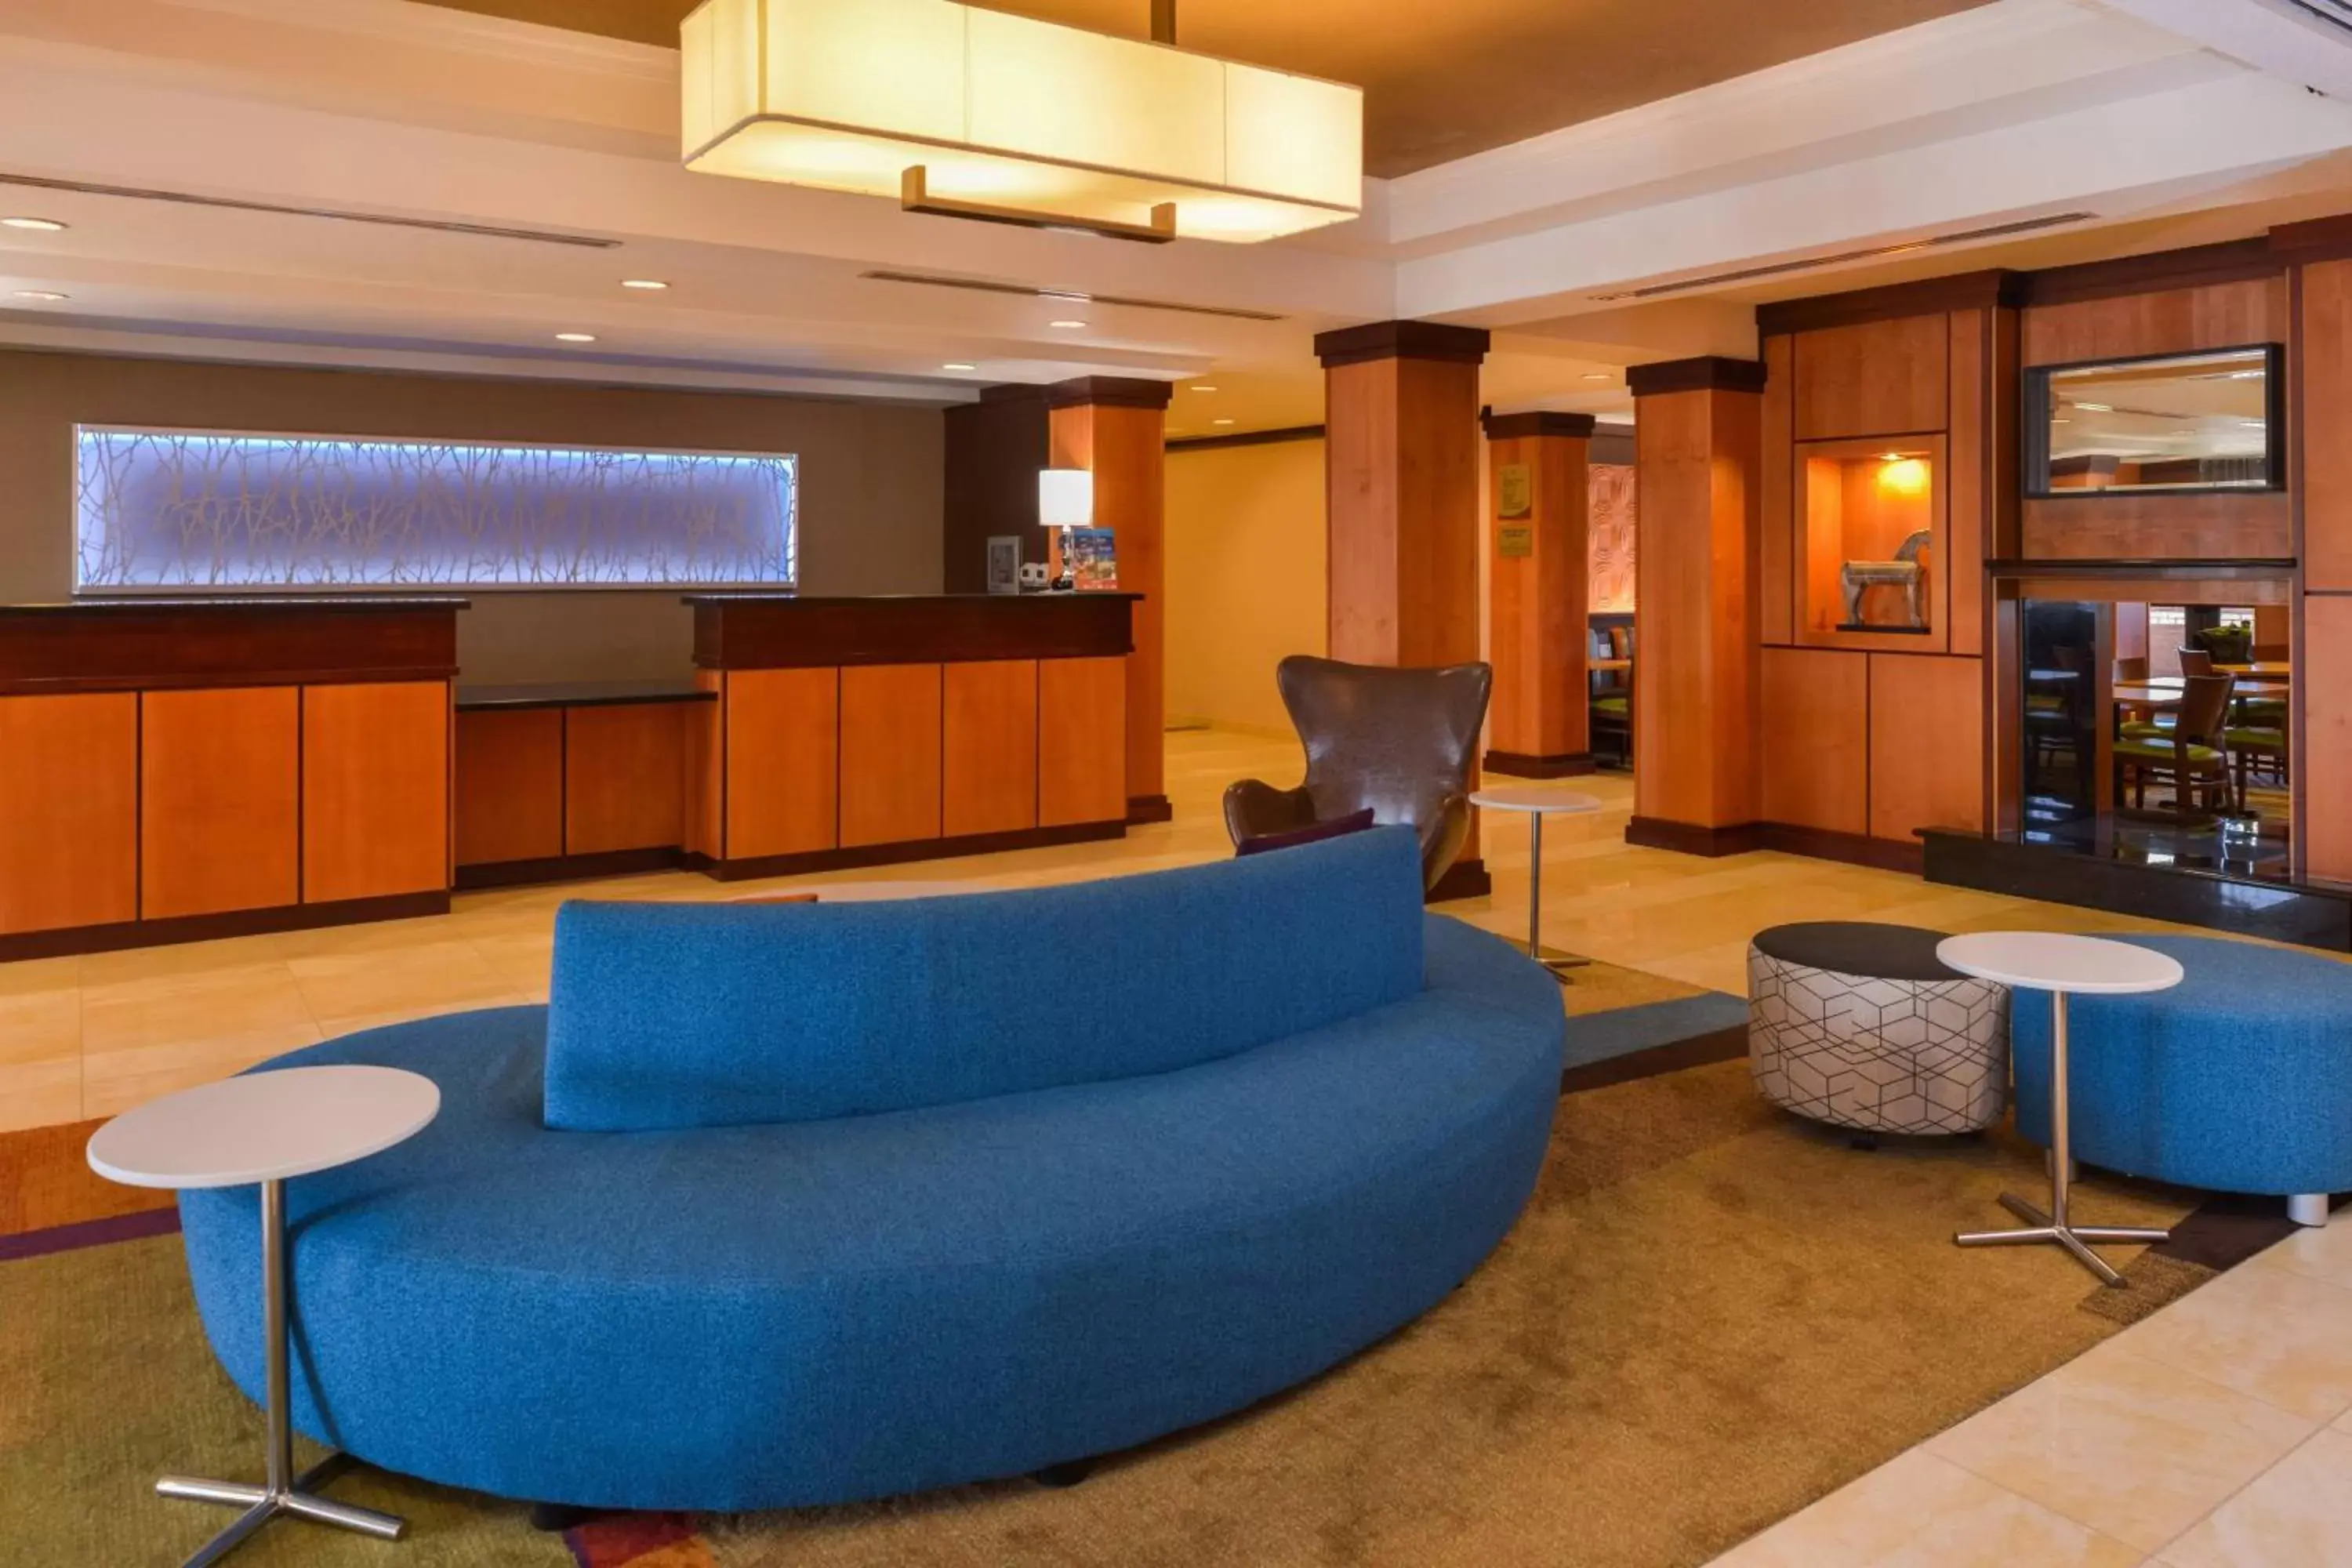 Lobby or reception, Lobby/Reception in Fairfield Inn & Suites Santa Maria